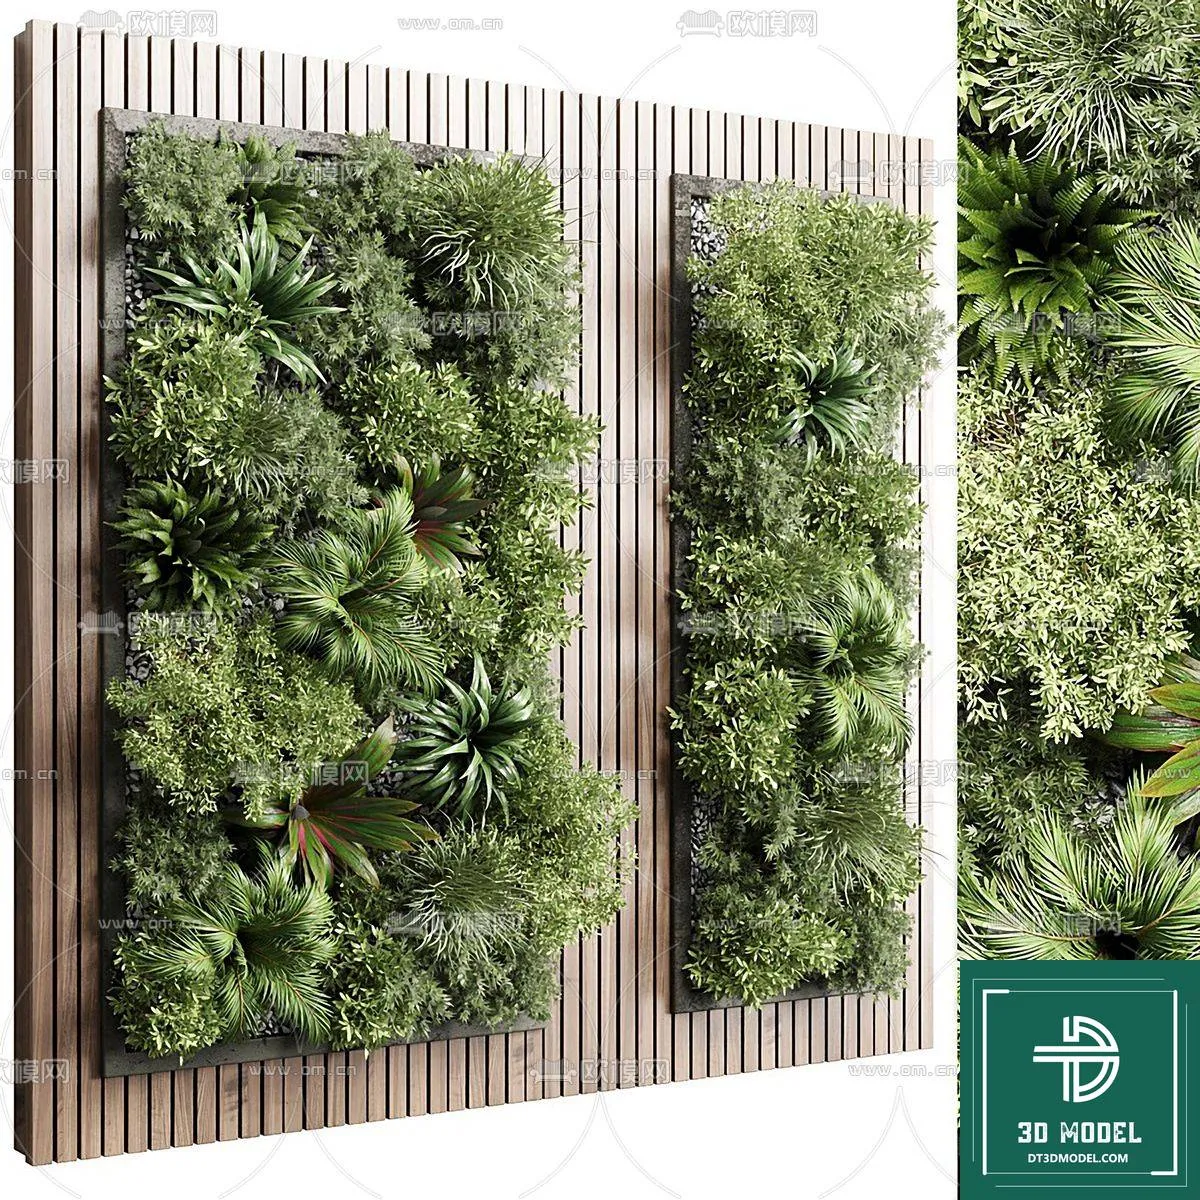 VERTICAL GARDEN – FITOWALL PLANT 3D MODEL – 136